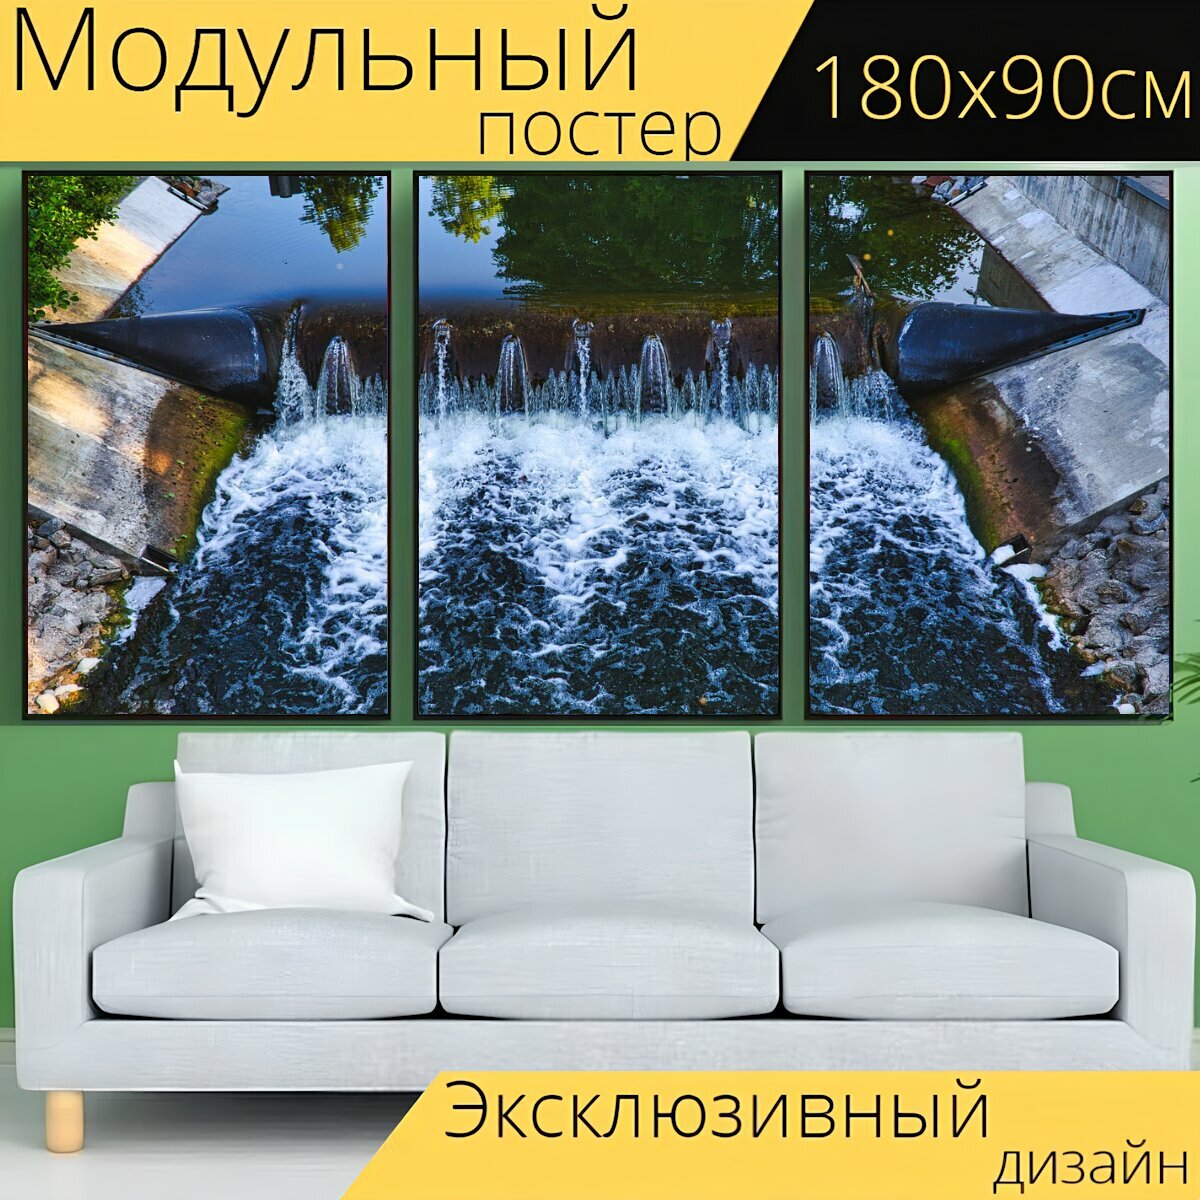 Модульный постер "Оборона, поток, природа" 180 x 90 см. для интерьера